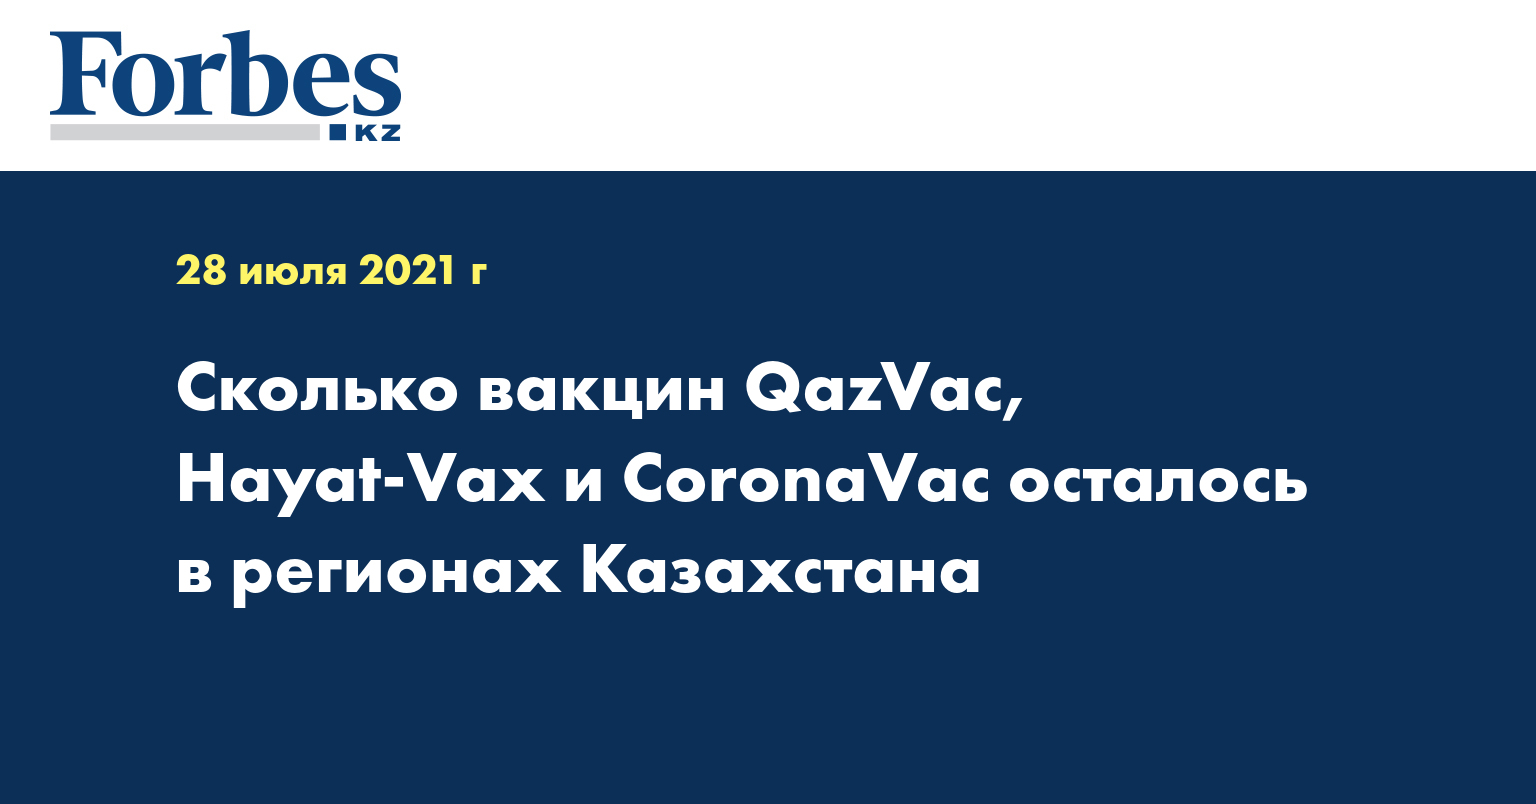 Сколько вакцин QazVac, Hayat-Vax и CoronaVac осталось в регионах Казахстана